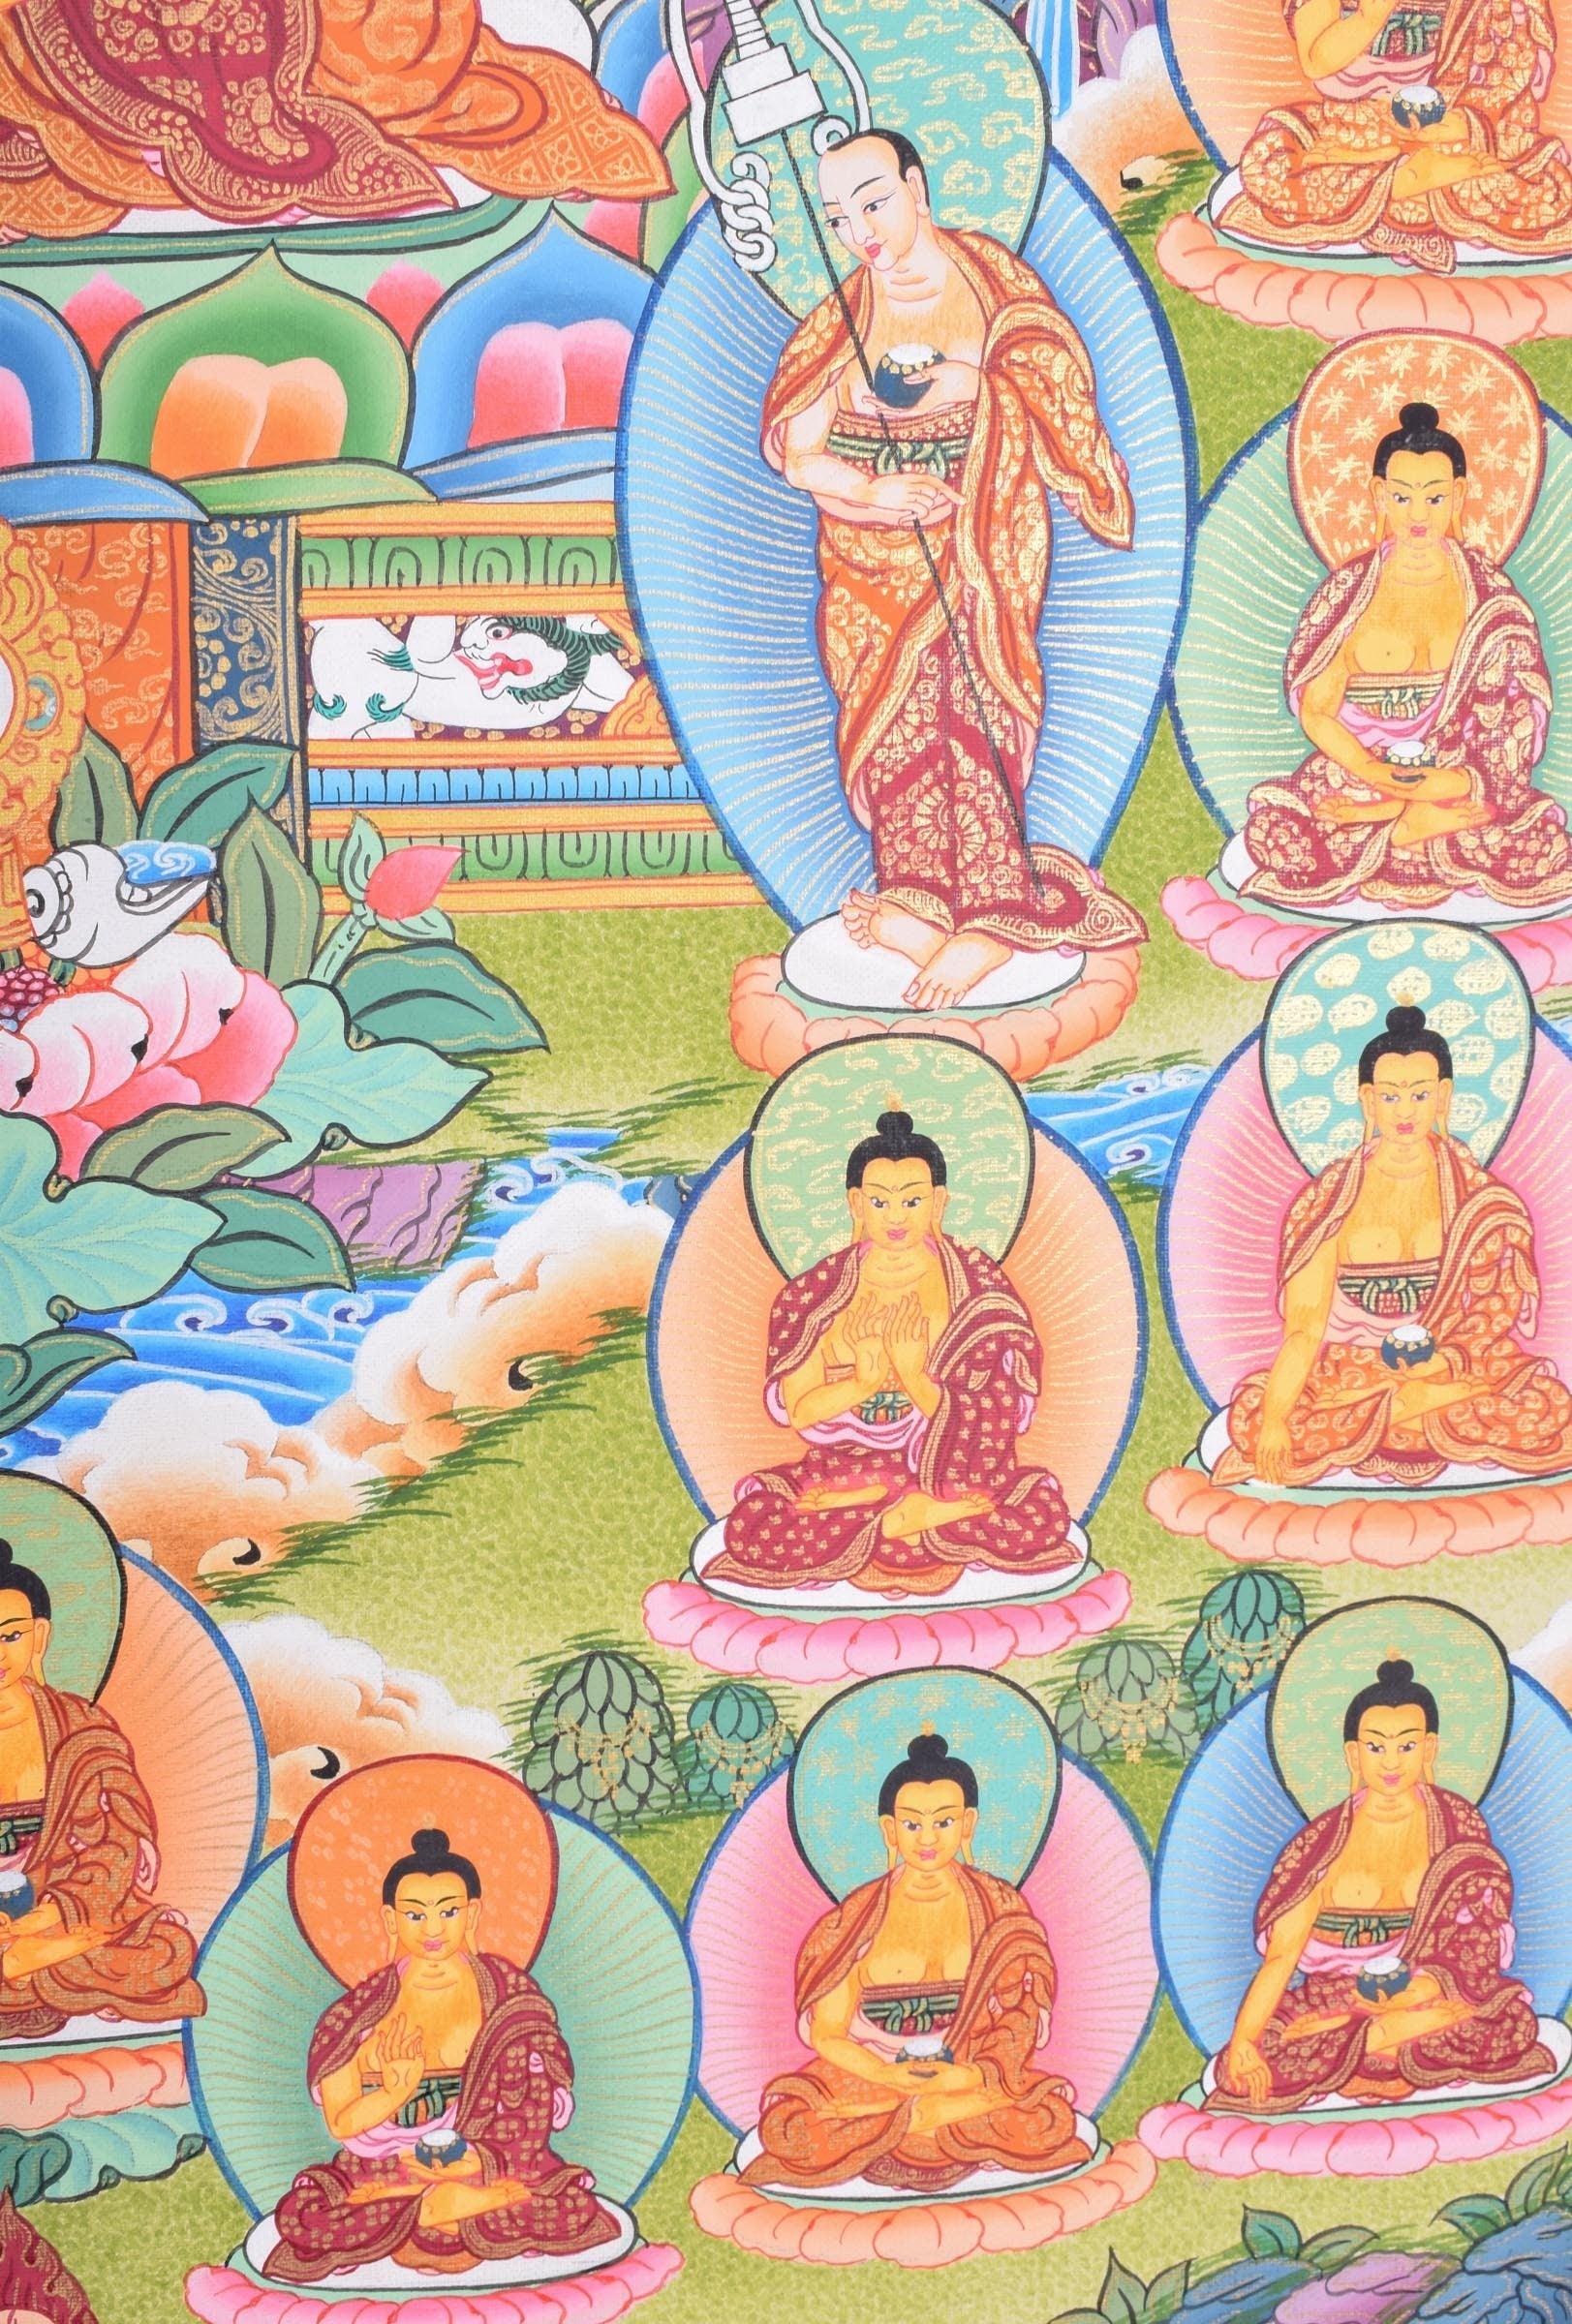 35 Buddha Shakyamuni Art - Himalayas Shop